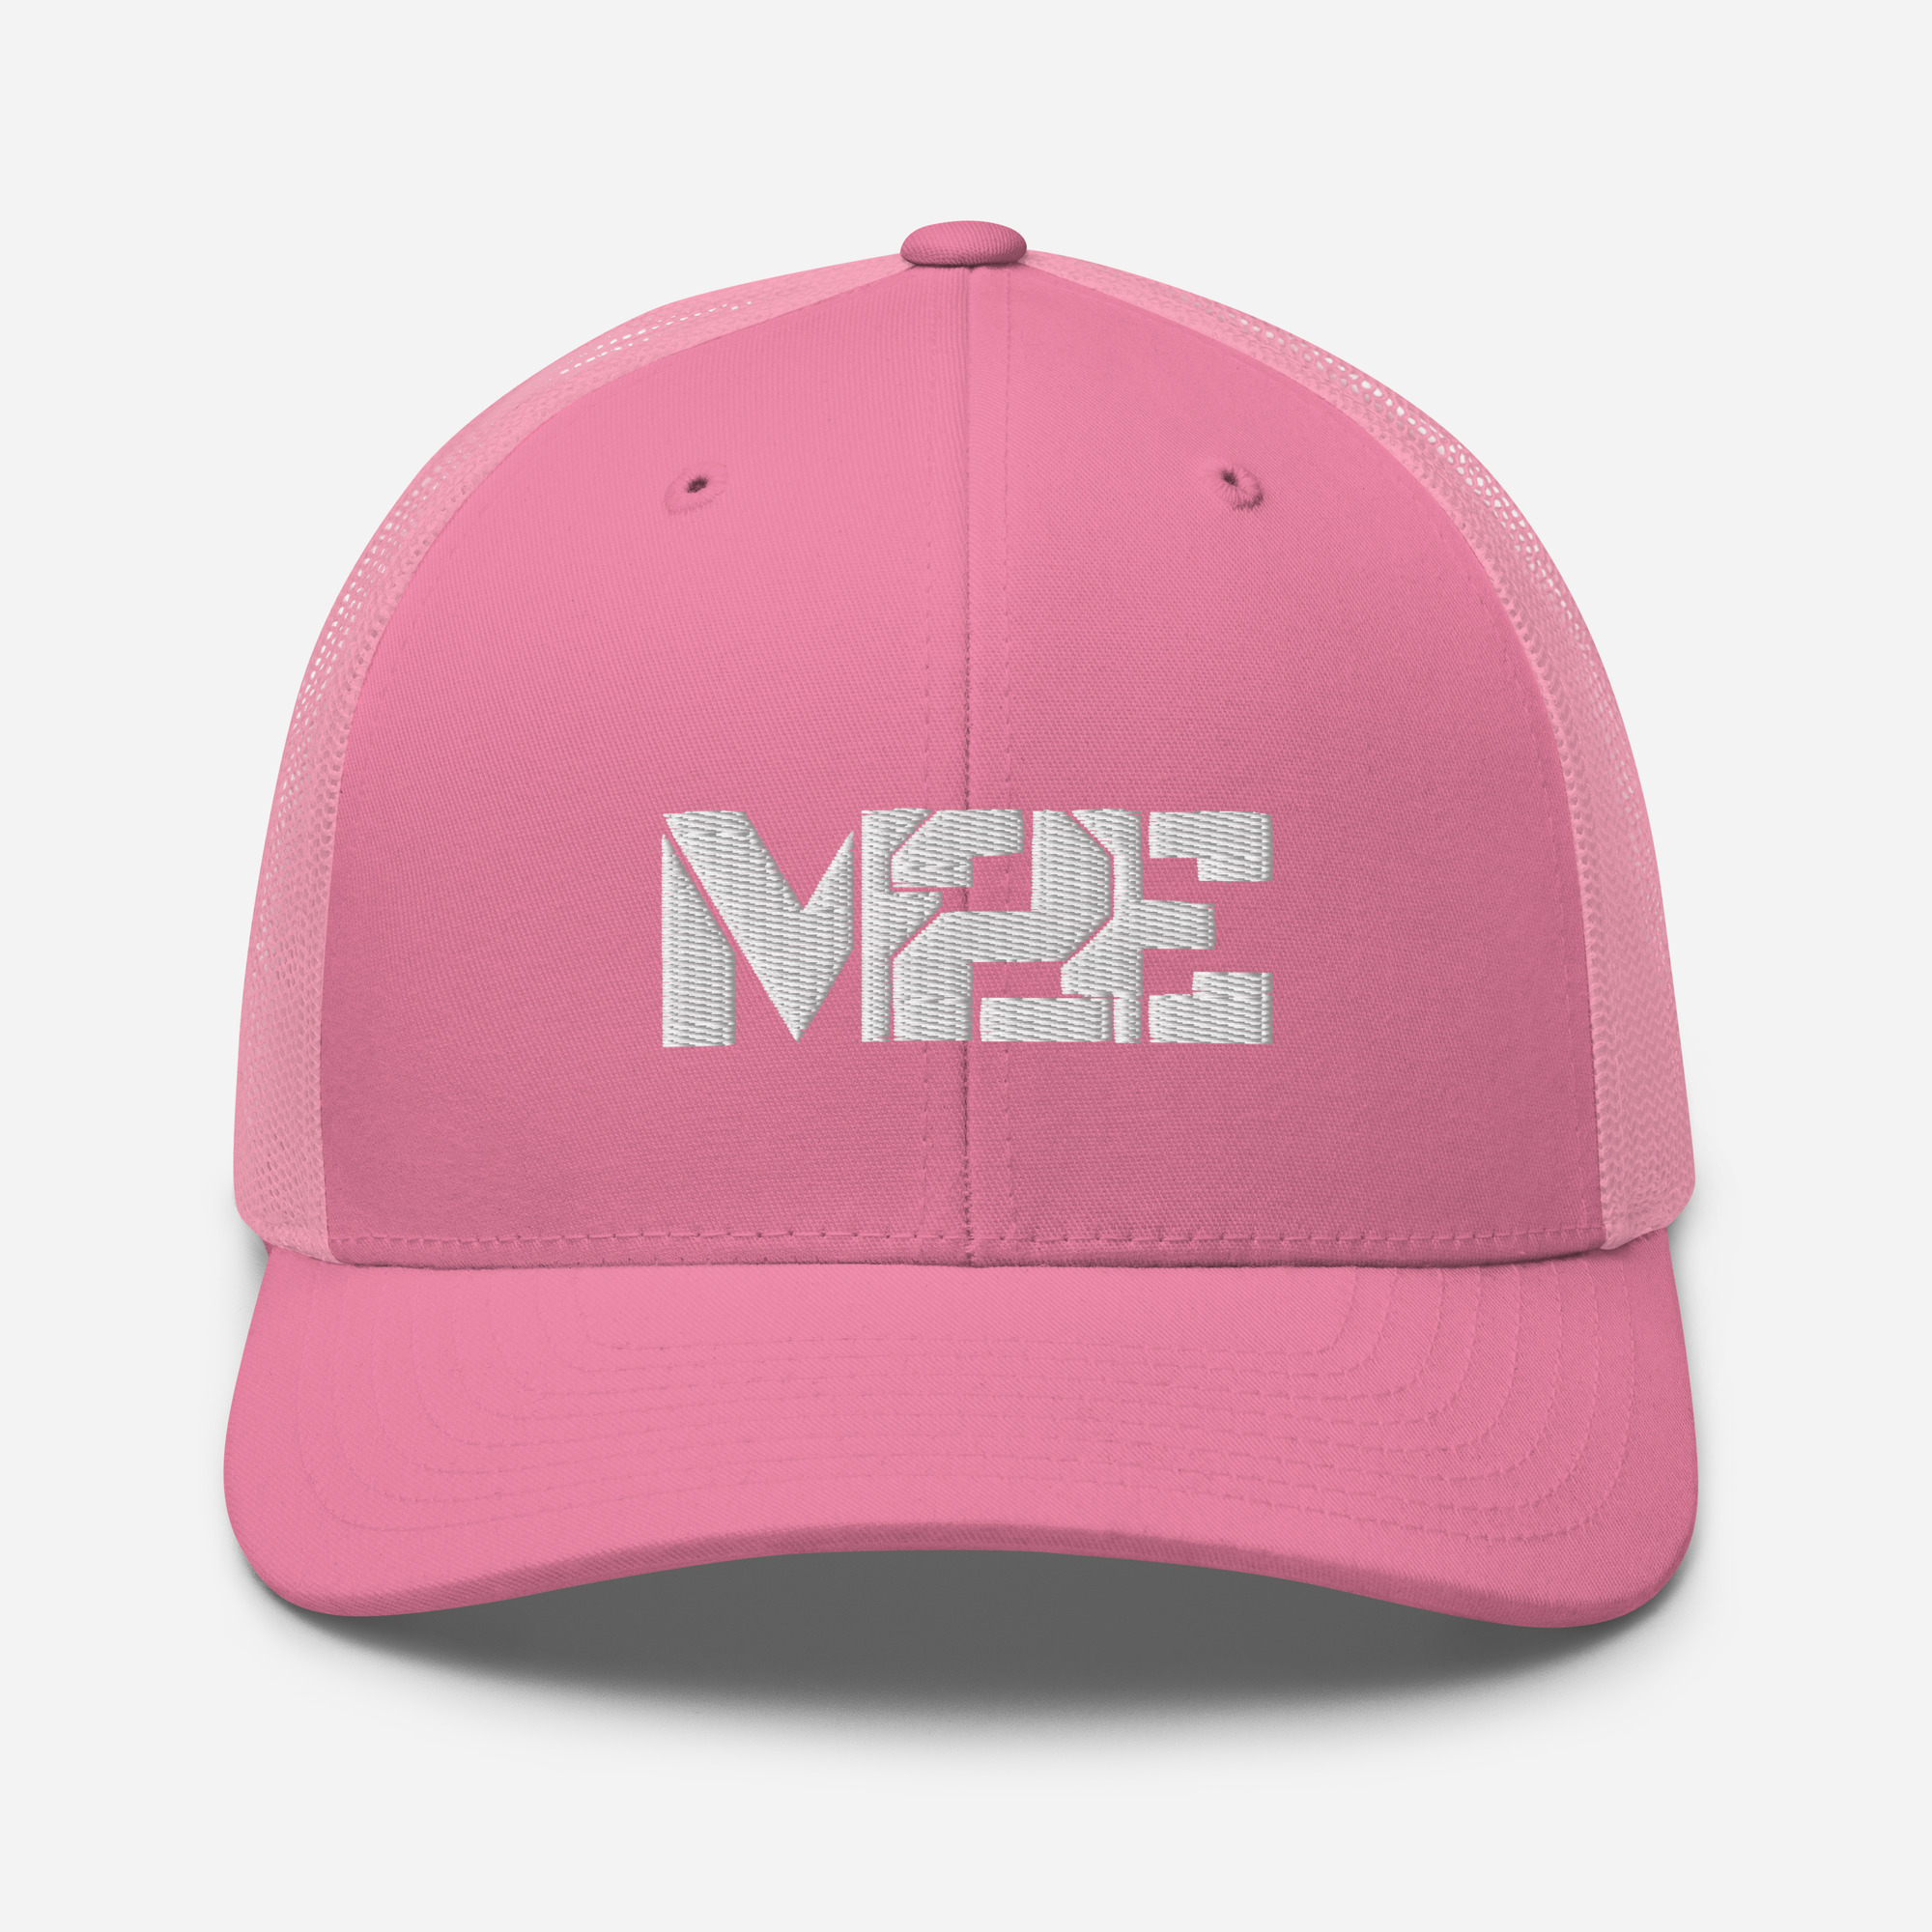 retro-trucker-hat-pink-front-6316911a28464.jpg